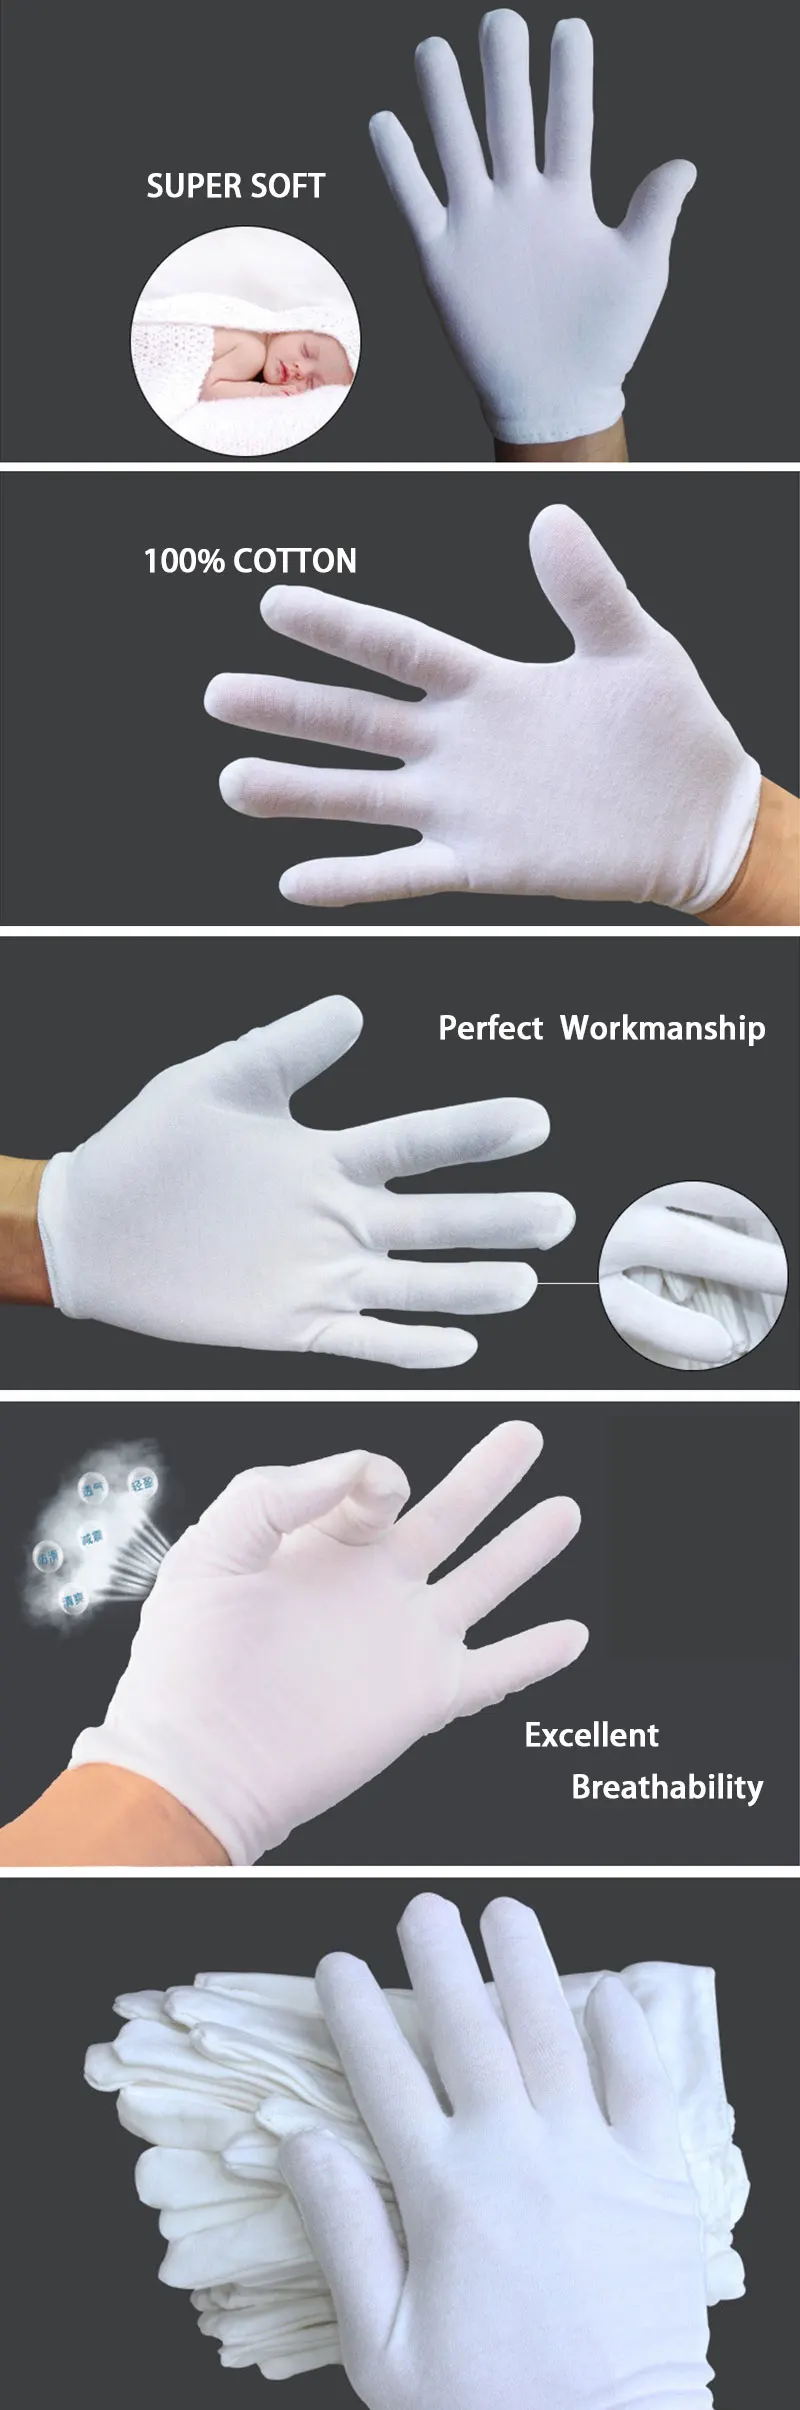 NMSafety 12 пар белых хлопковых церемониальных перчаток для мужчин и женщин, перчатки для обслуживания/официантов/ювелирных изделий